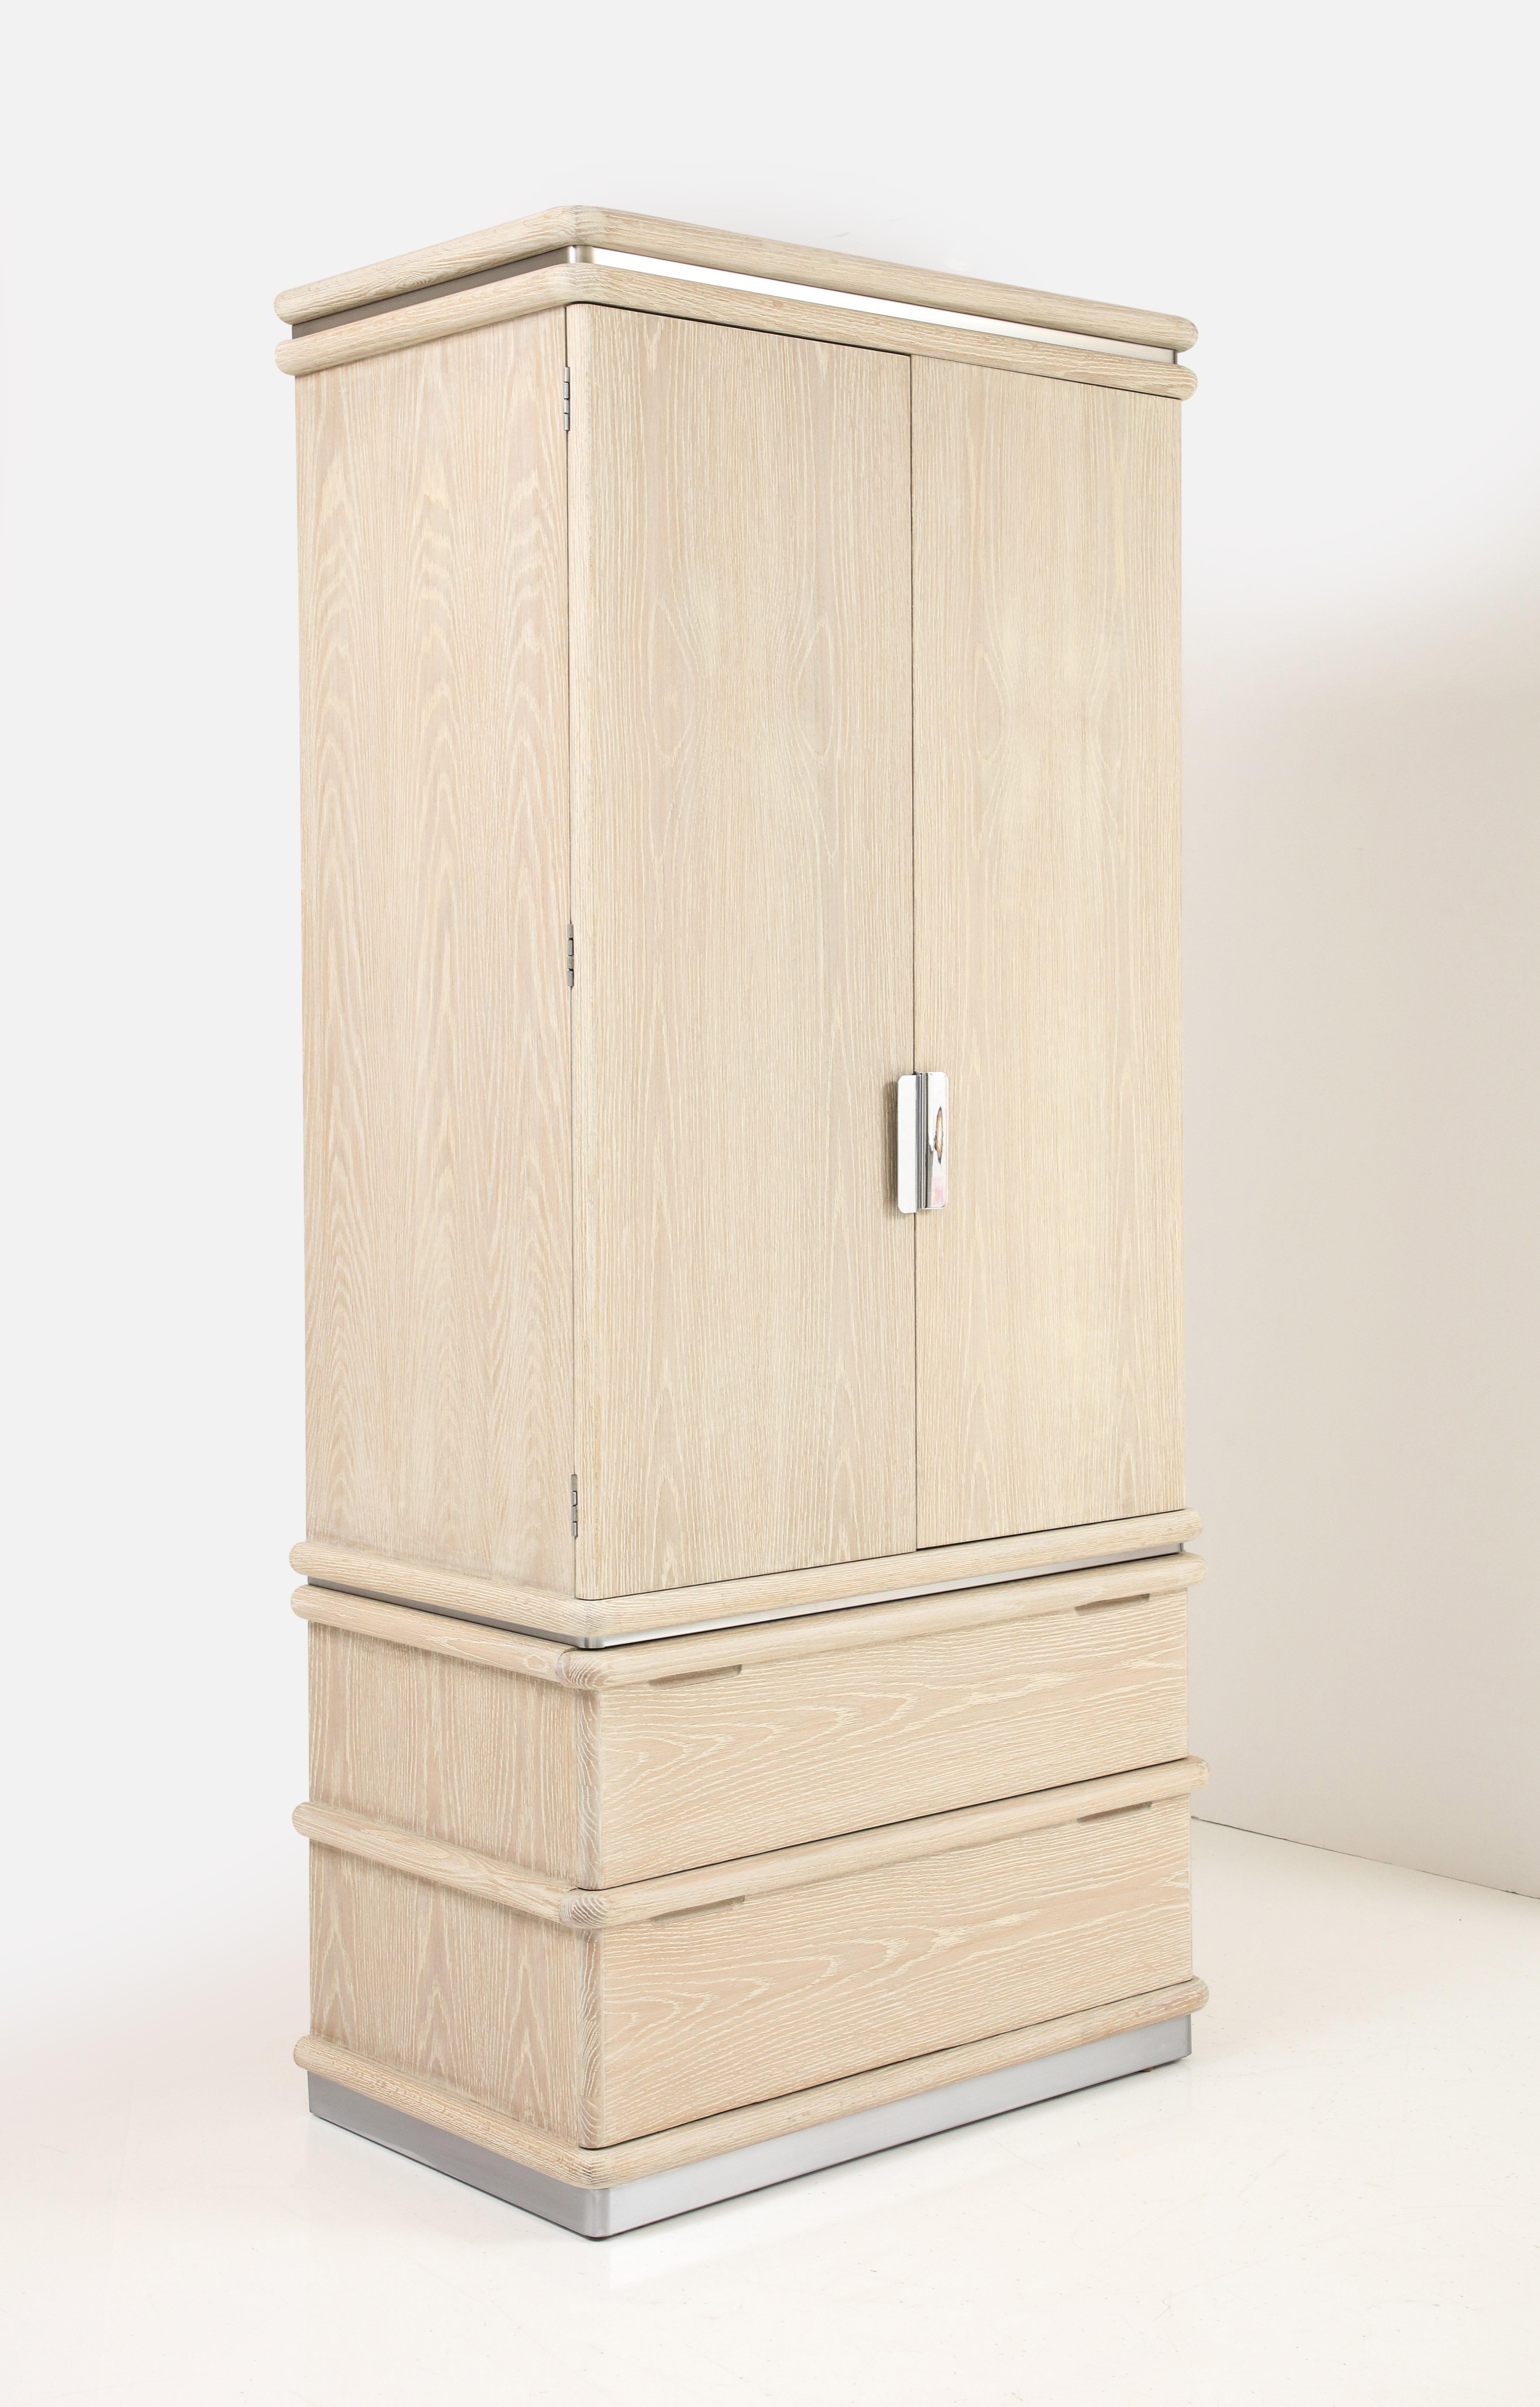 Custom Finished, Cerused Oak Kleiderschrank von Jay Spectre für Century Furniture. Der Kleiderschrank verfügt über 2 große untere Schubladen und Türen, die sich öffnen lassen, um eine Reihe von Fächern und kleineren Schubladen zu enthüllen. Kürzlich